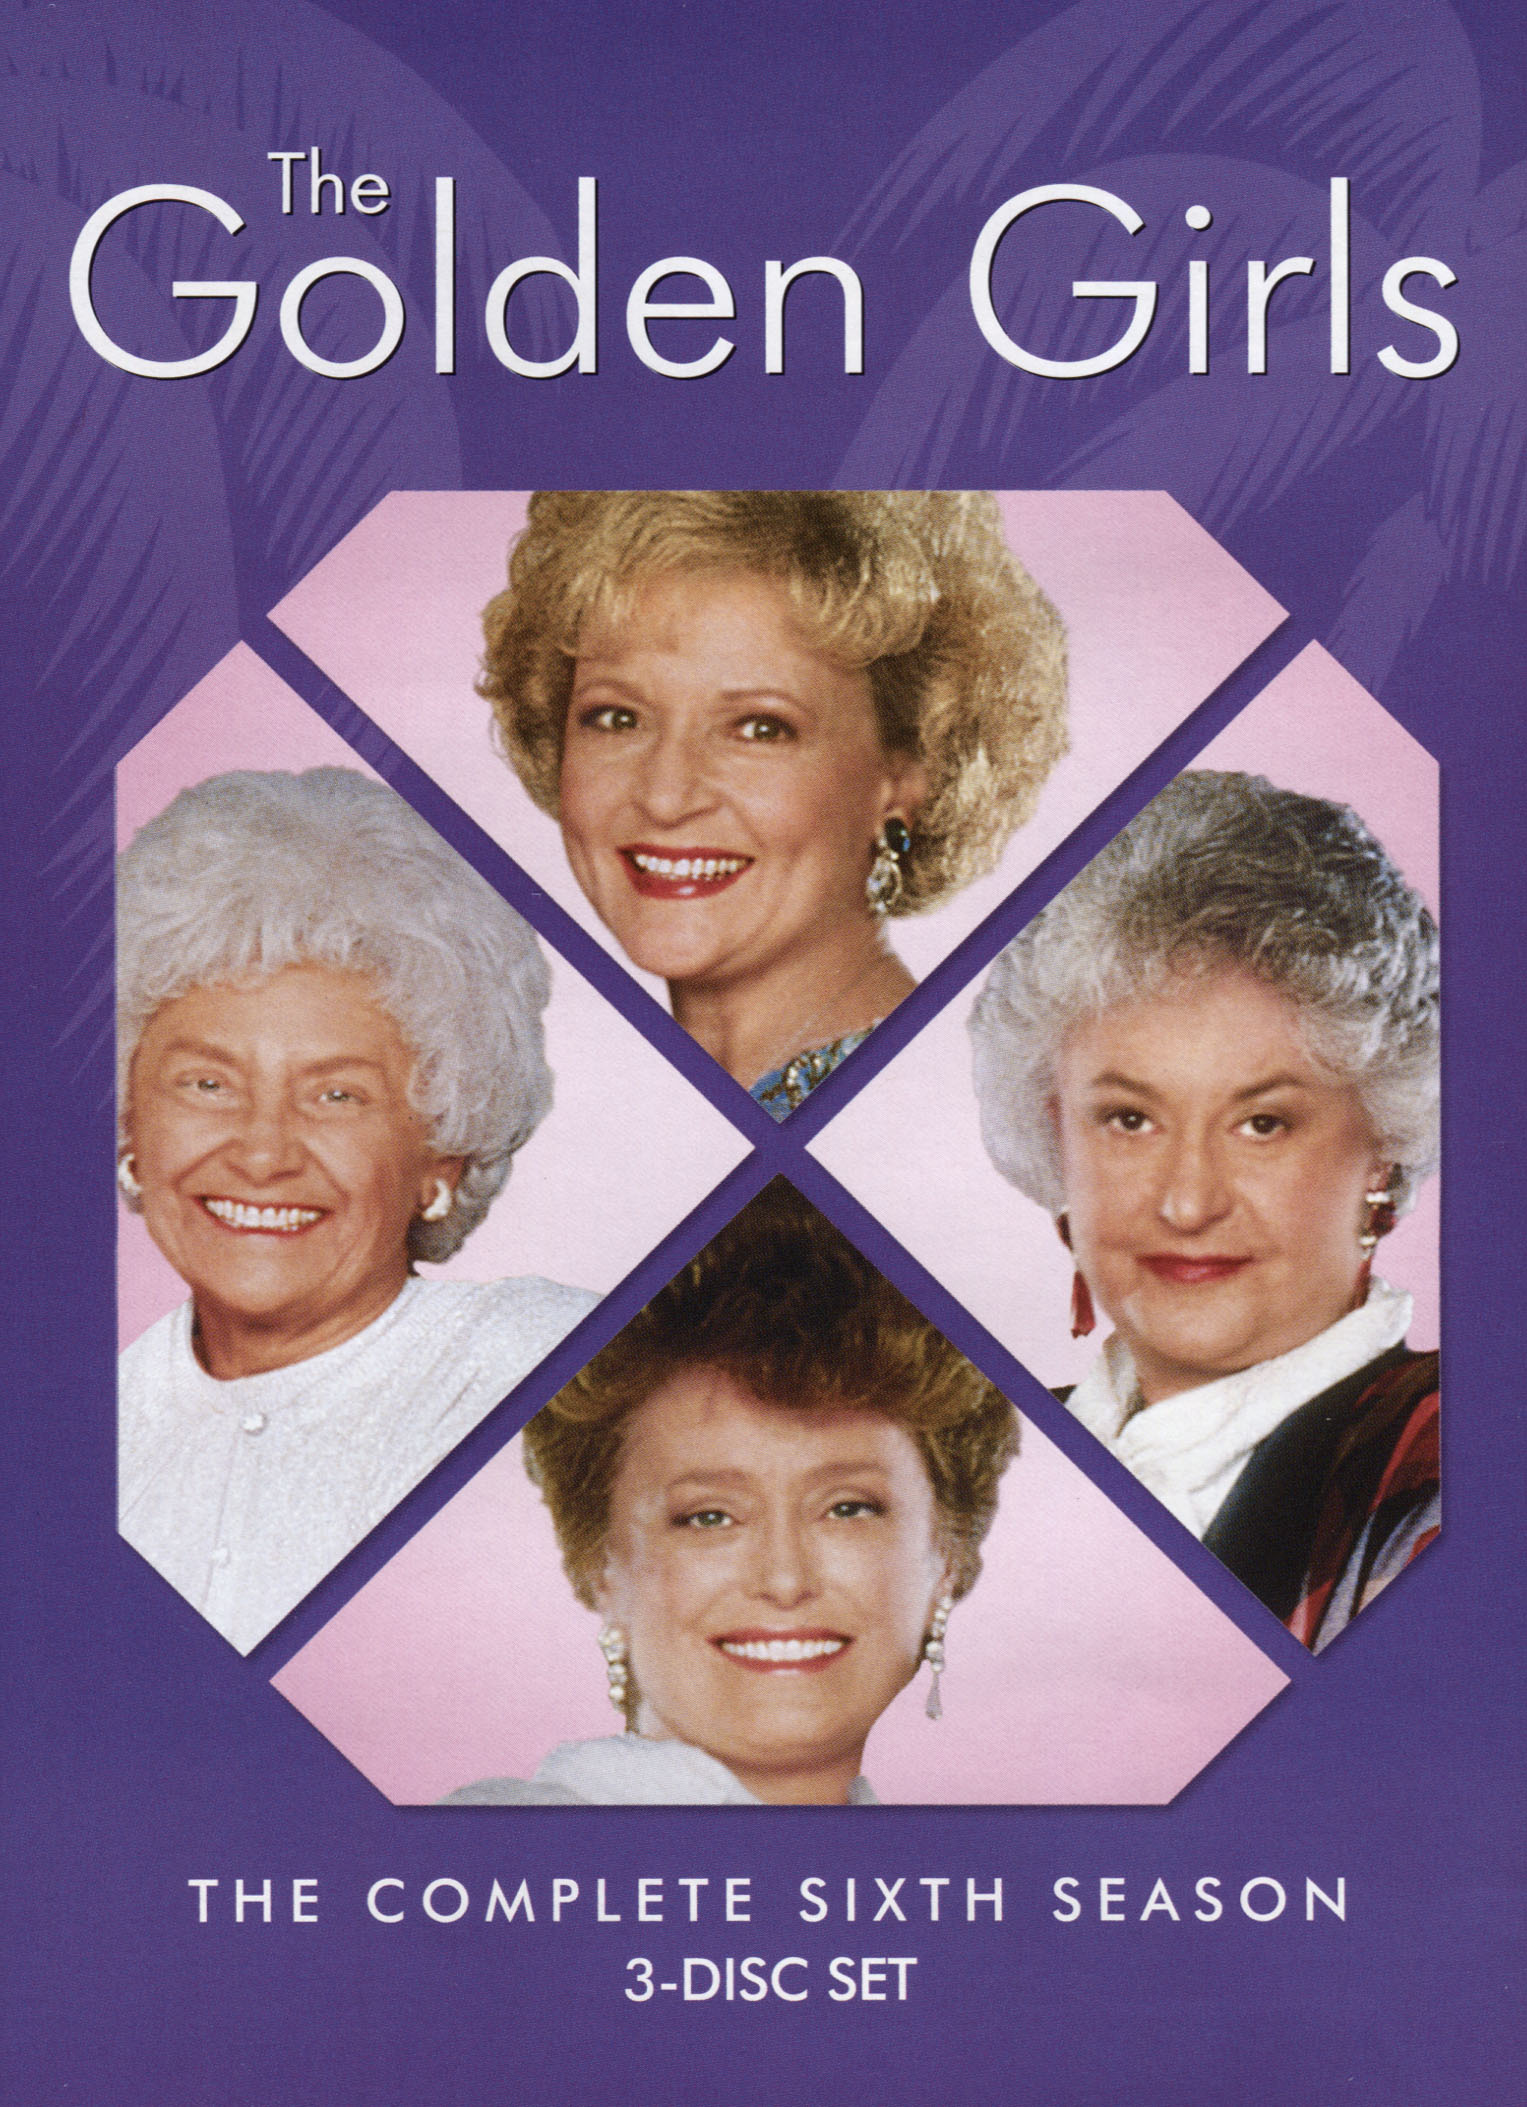 The Golden Girls: Season 1